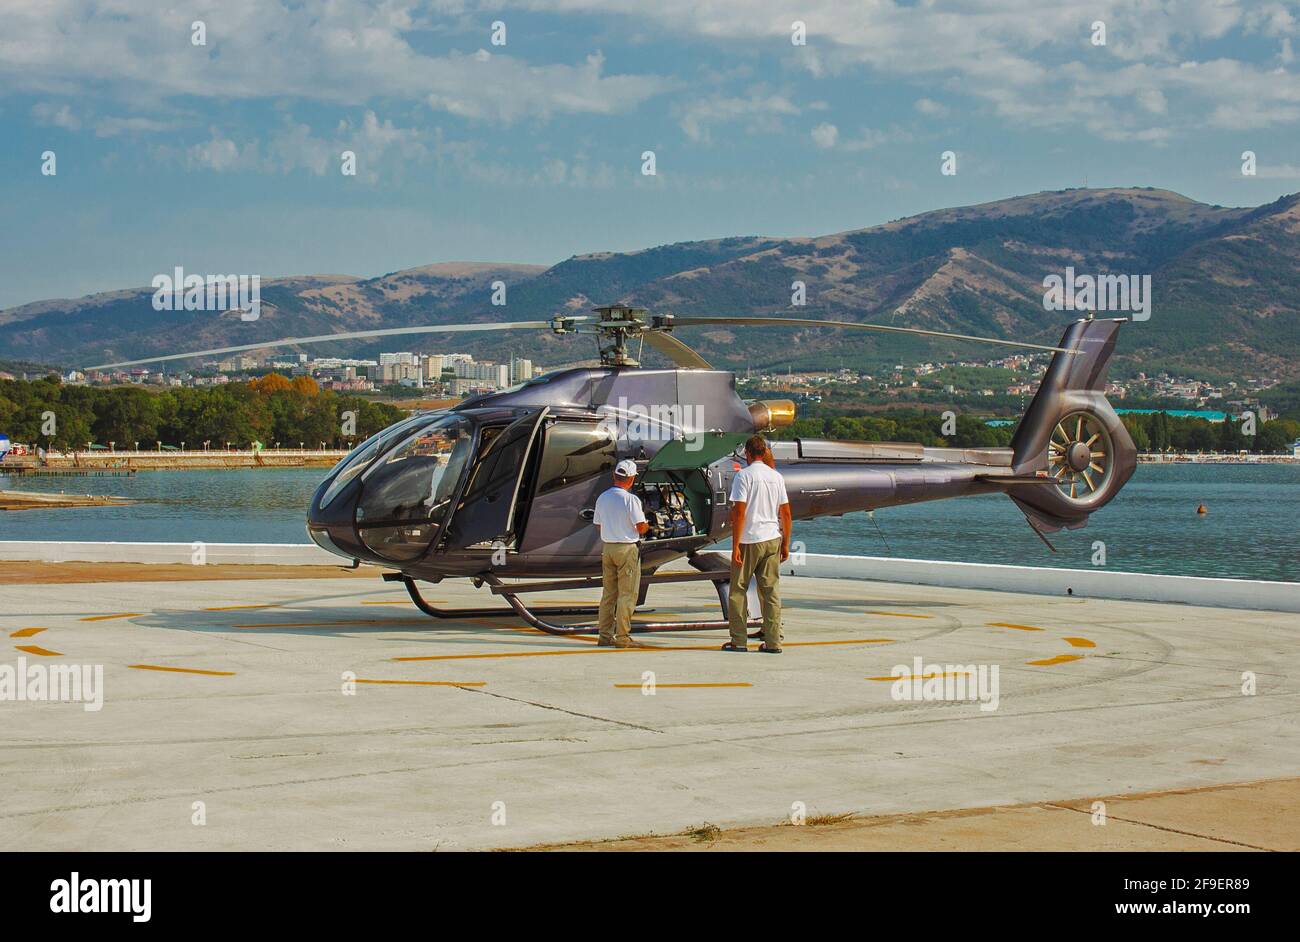 Flugplatz mit einem Hubschrauber, der darauf steht Stockfoto